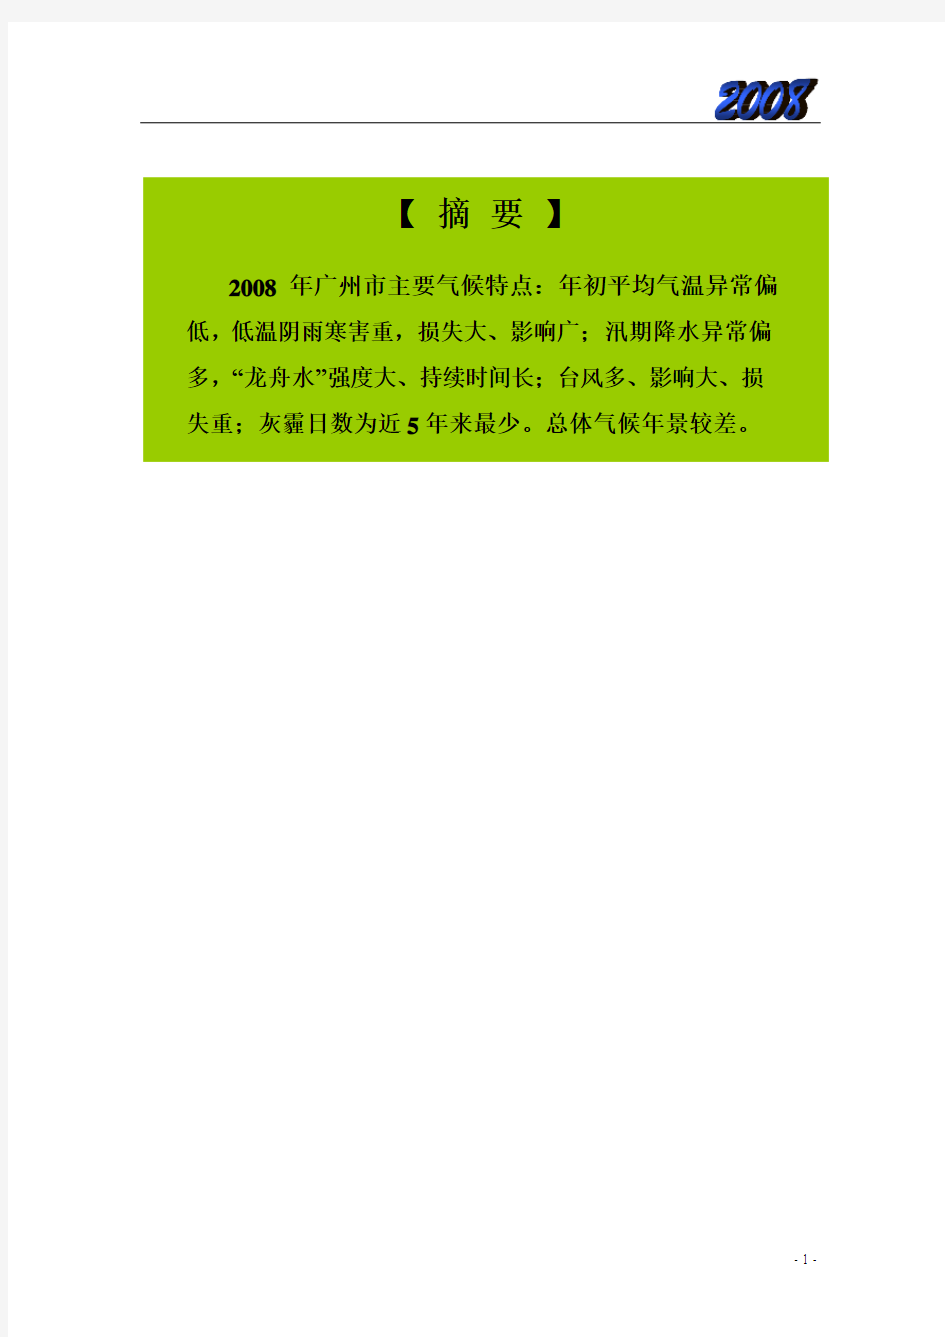 2008年广州气候公报-广州天气